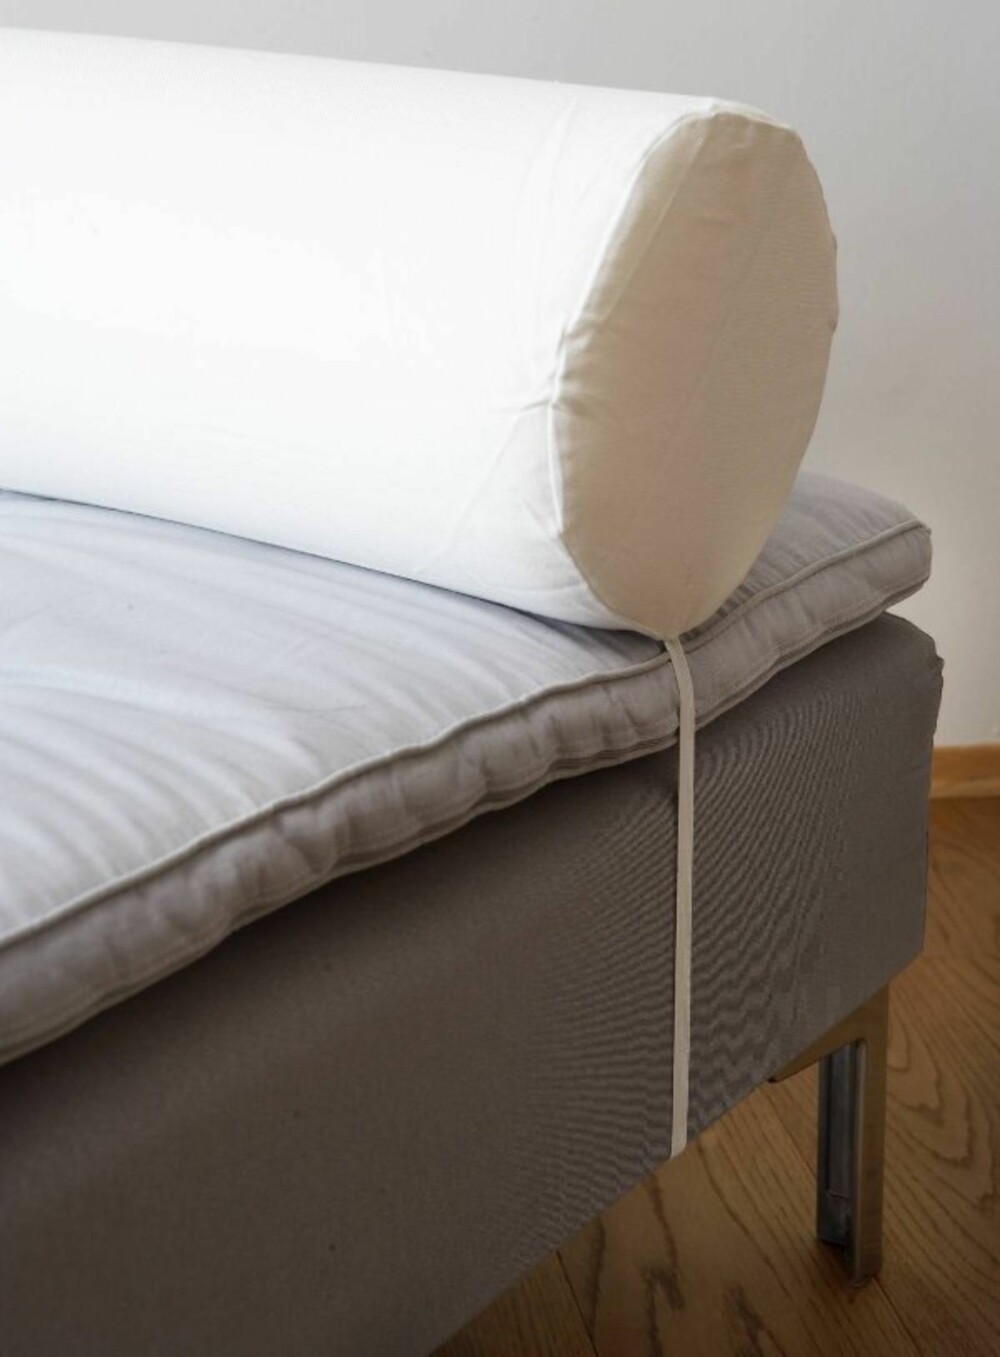 PØLLEPUTE: Fest en strikk i en ende av pølleputen, trekk den under madrassen og fest den i den andre siden av puten.